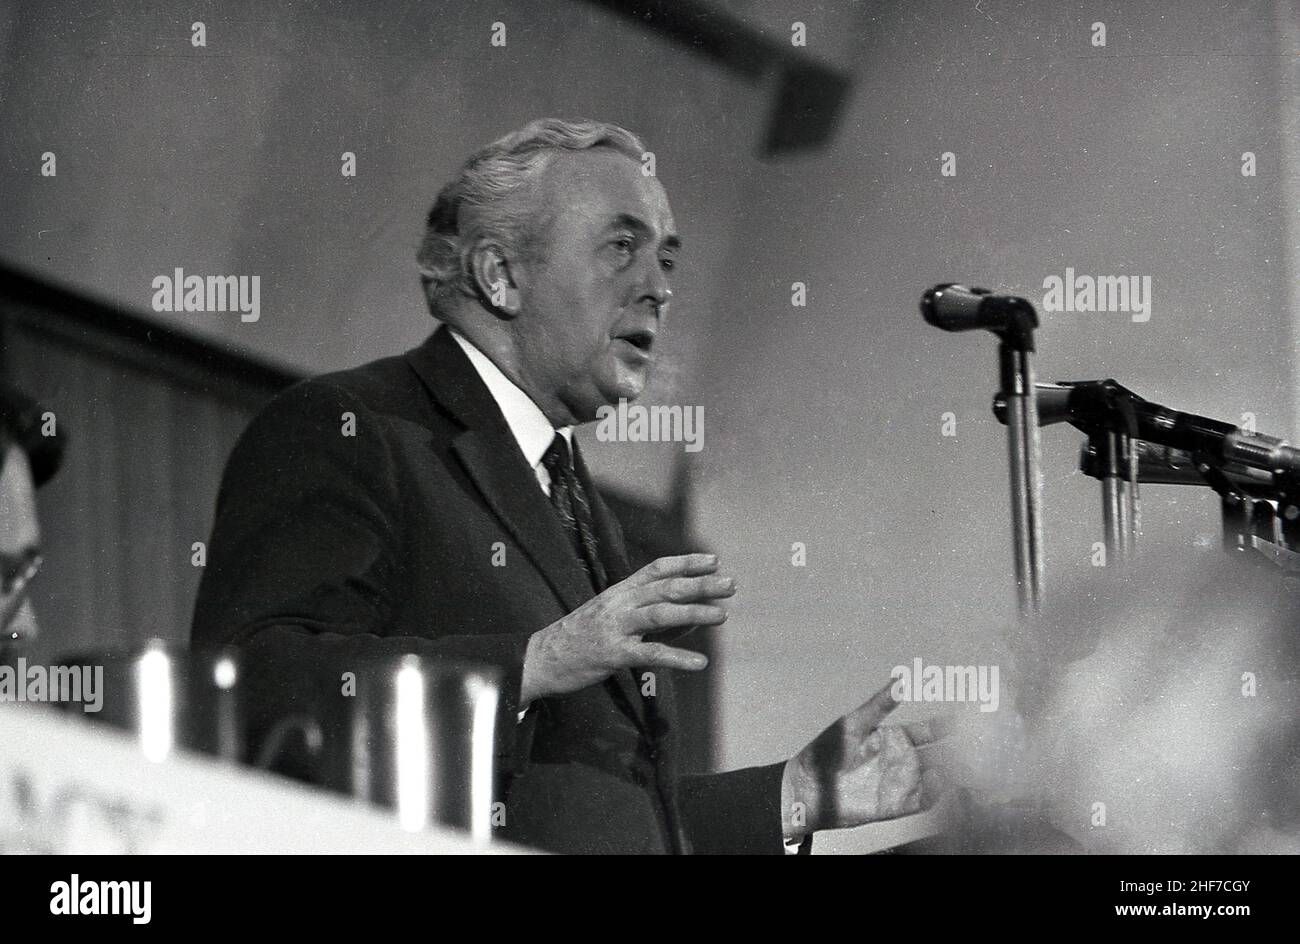 1970s, histórico, político laborista Harold Wilson hablando en una reunión pública en Lambeth, Sureste de Londres, Inglaterra, Reino Unido. Foto de stock